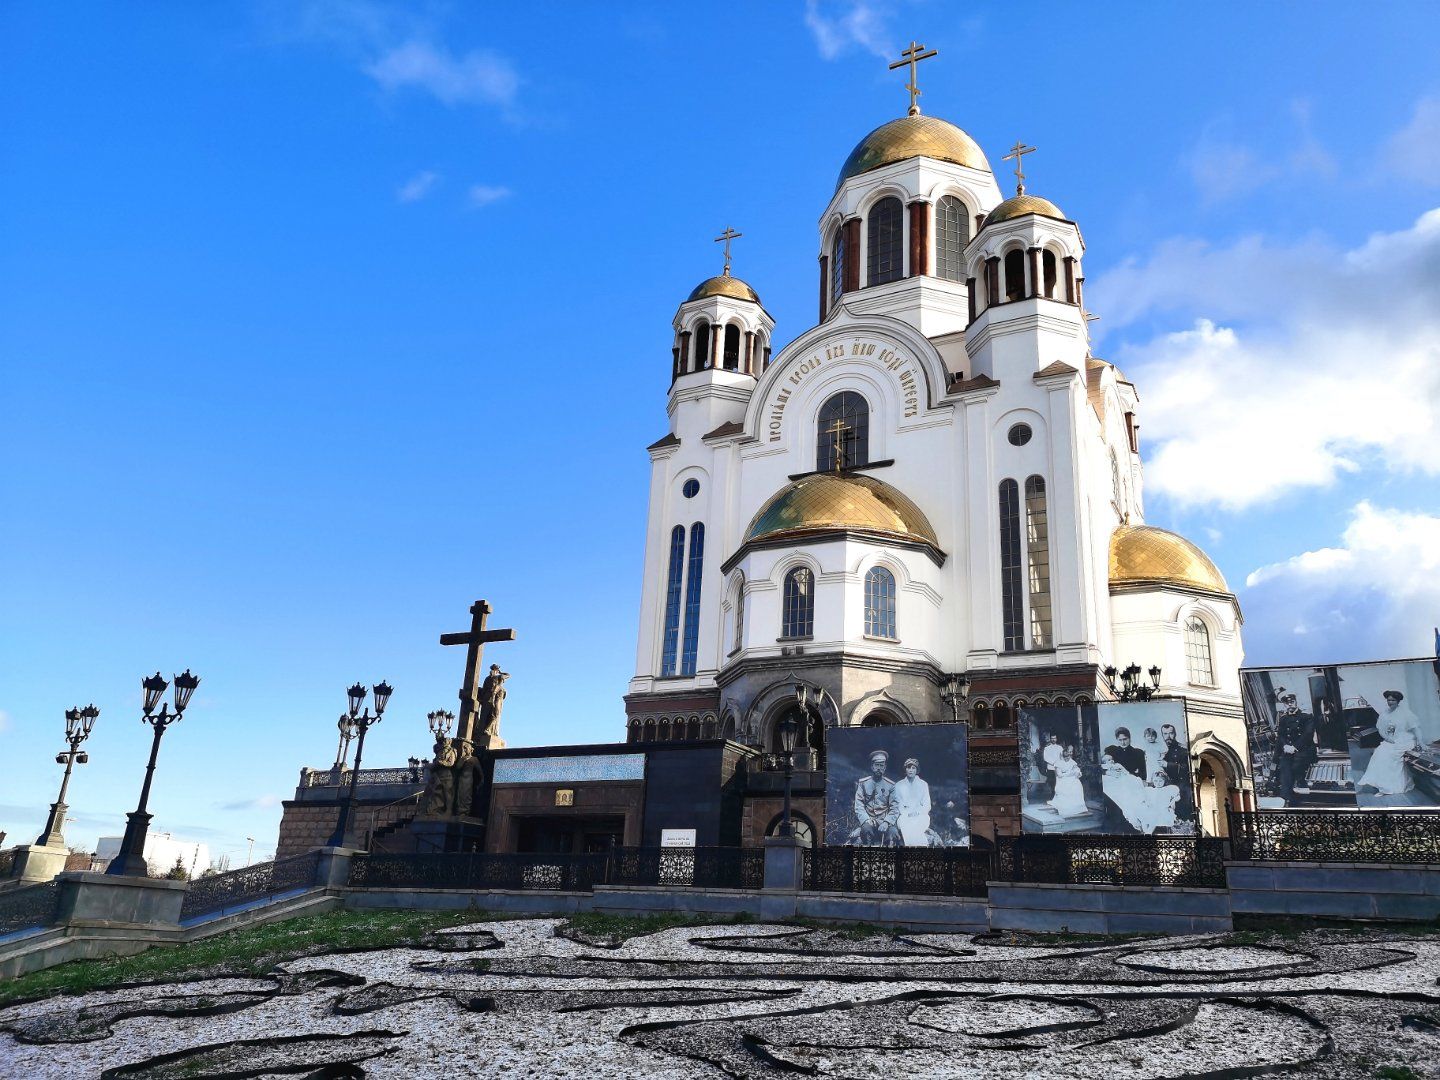 叶卡捷琳堡滴血大教堂，东正教拜占庭建筑风格，为当地重要地标之一。 教堂门前竖立着木质的十字架与人物雕